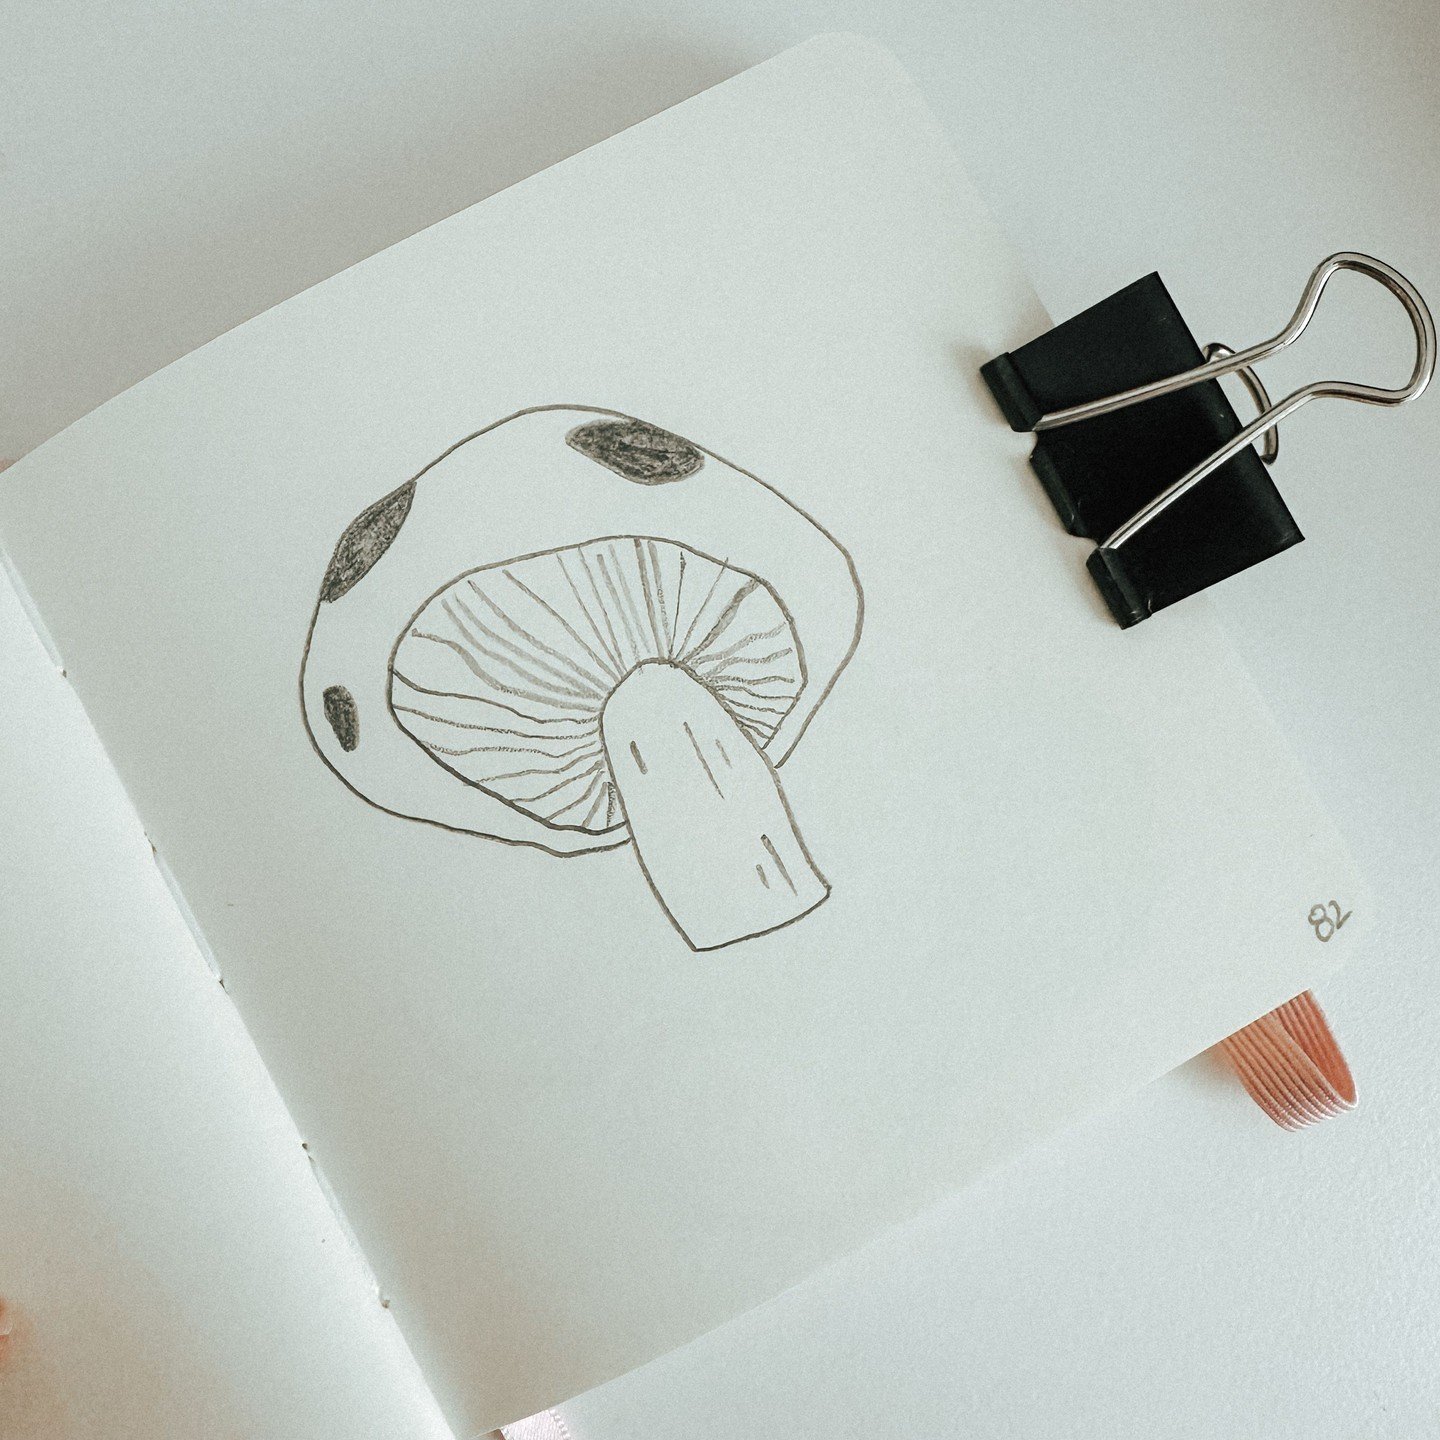 82: Mushroom
100 plant sketches
#sketchbook #sketchbookart #plantdrawing